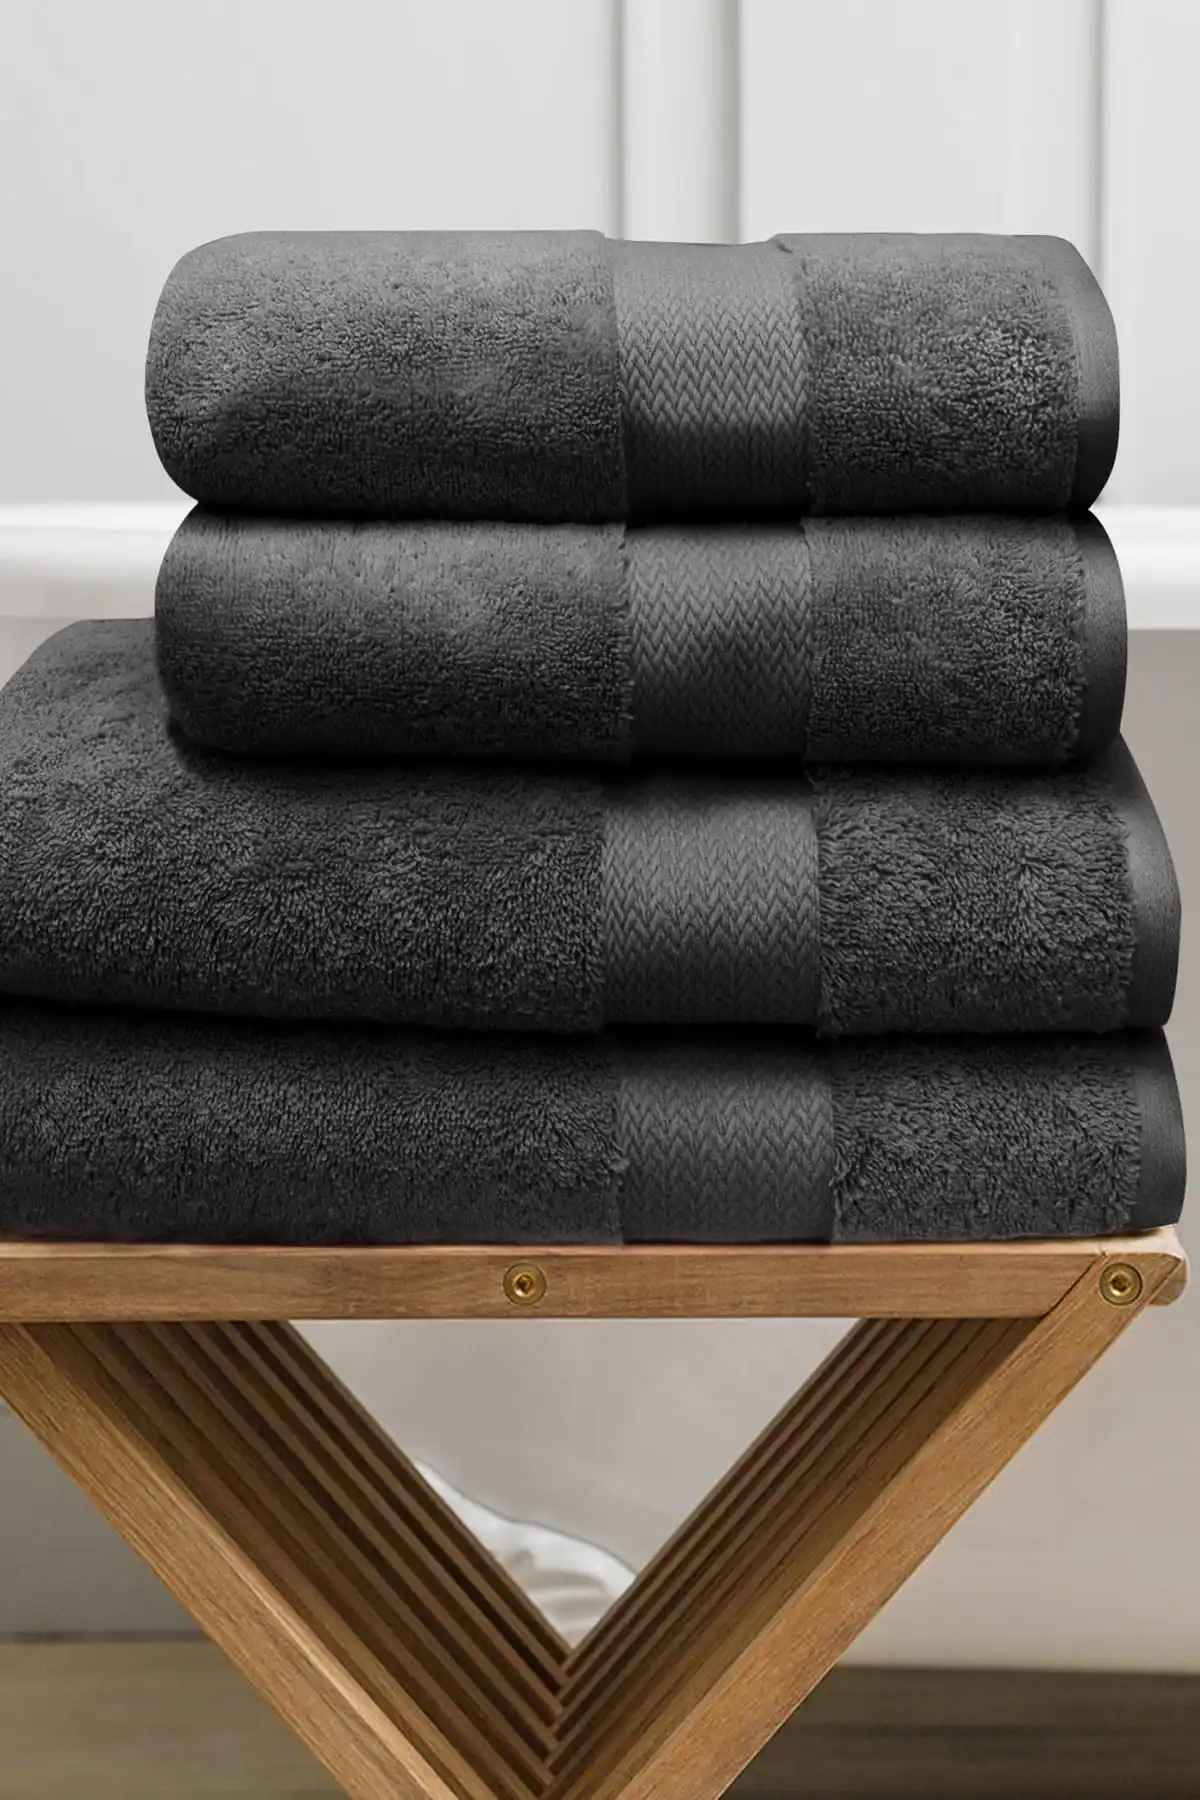 towel-set-4-pcs-black-cotton-soft-absorbent